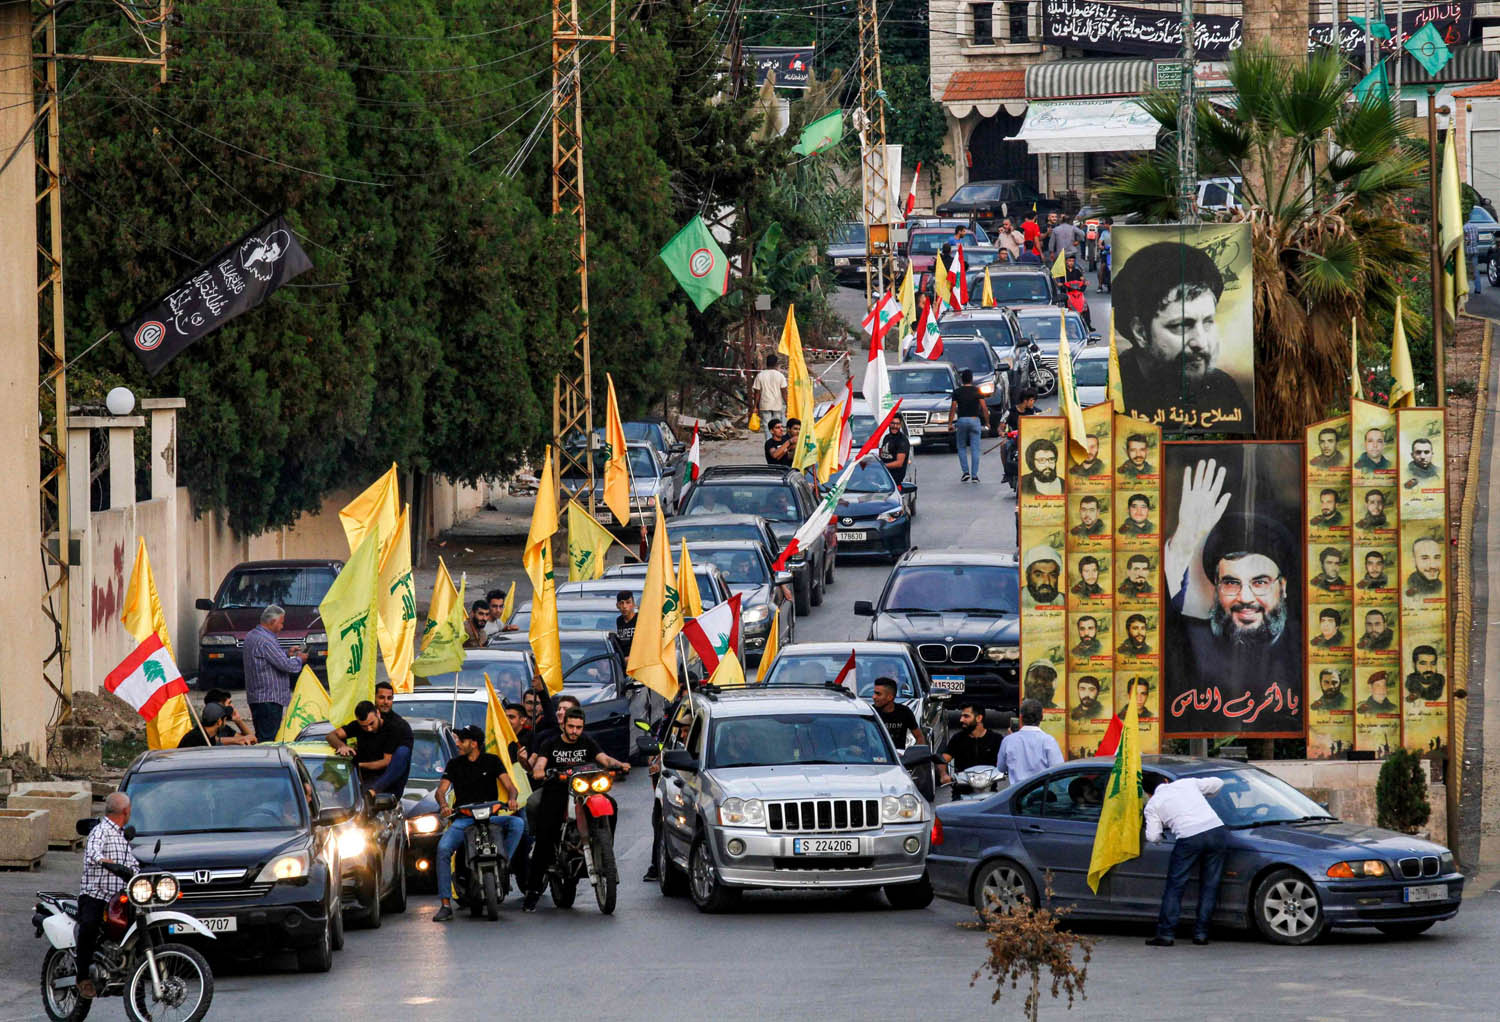 ناشطون في حزب الله يردون بتظاهرات في بيروت على الاحتجاجات ضد الفساد والمحسوبية